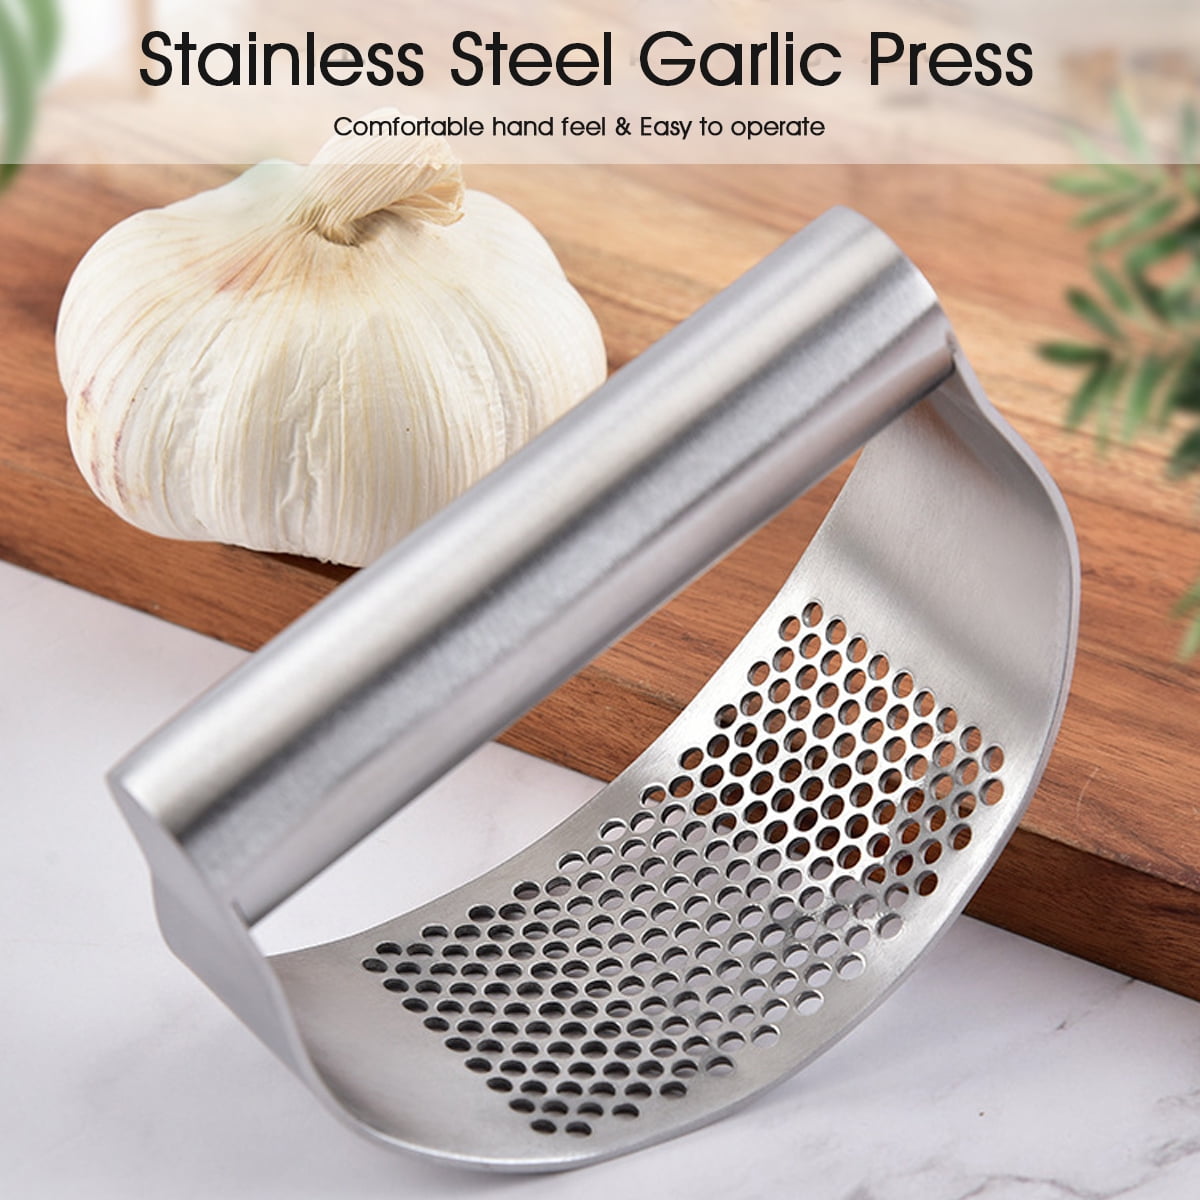 Stainless Steel Manual Garlic Press Crusher Squeezer Masher Kitchen Tool